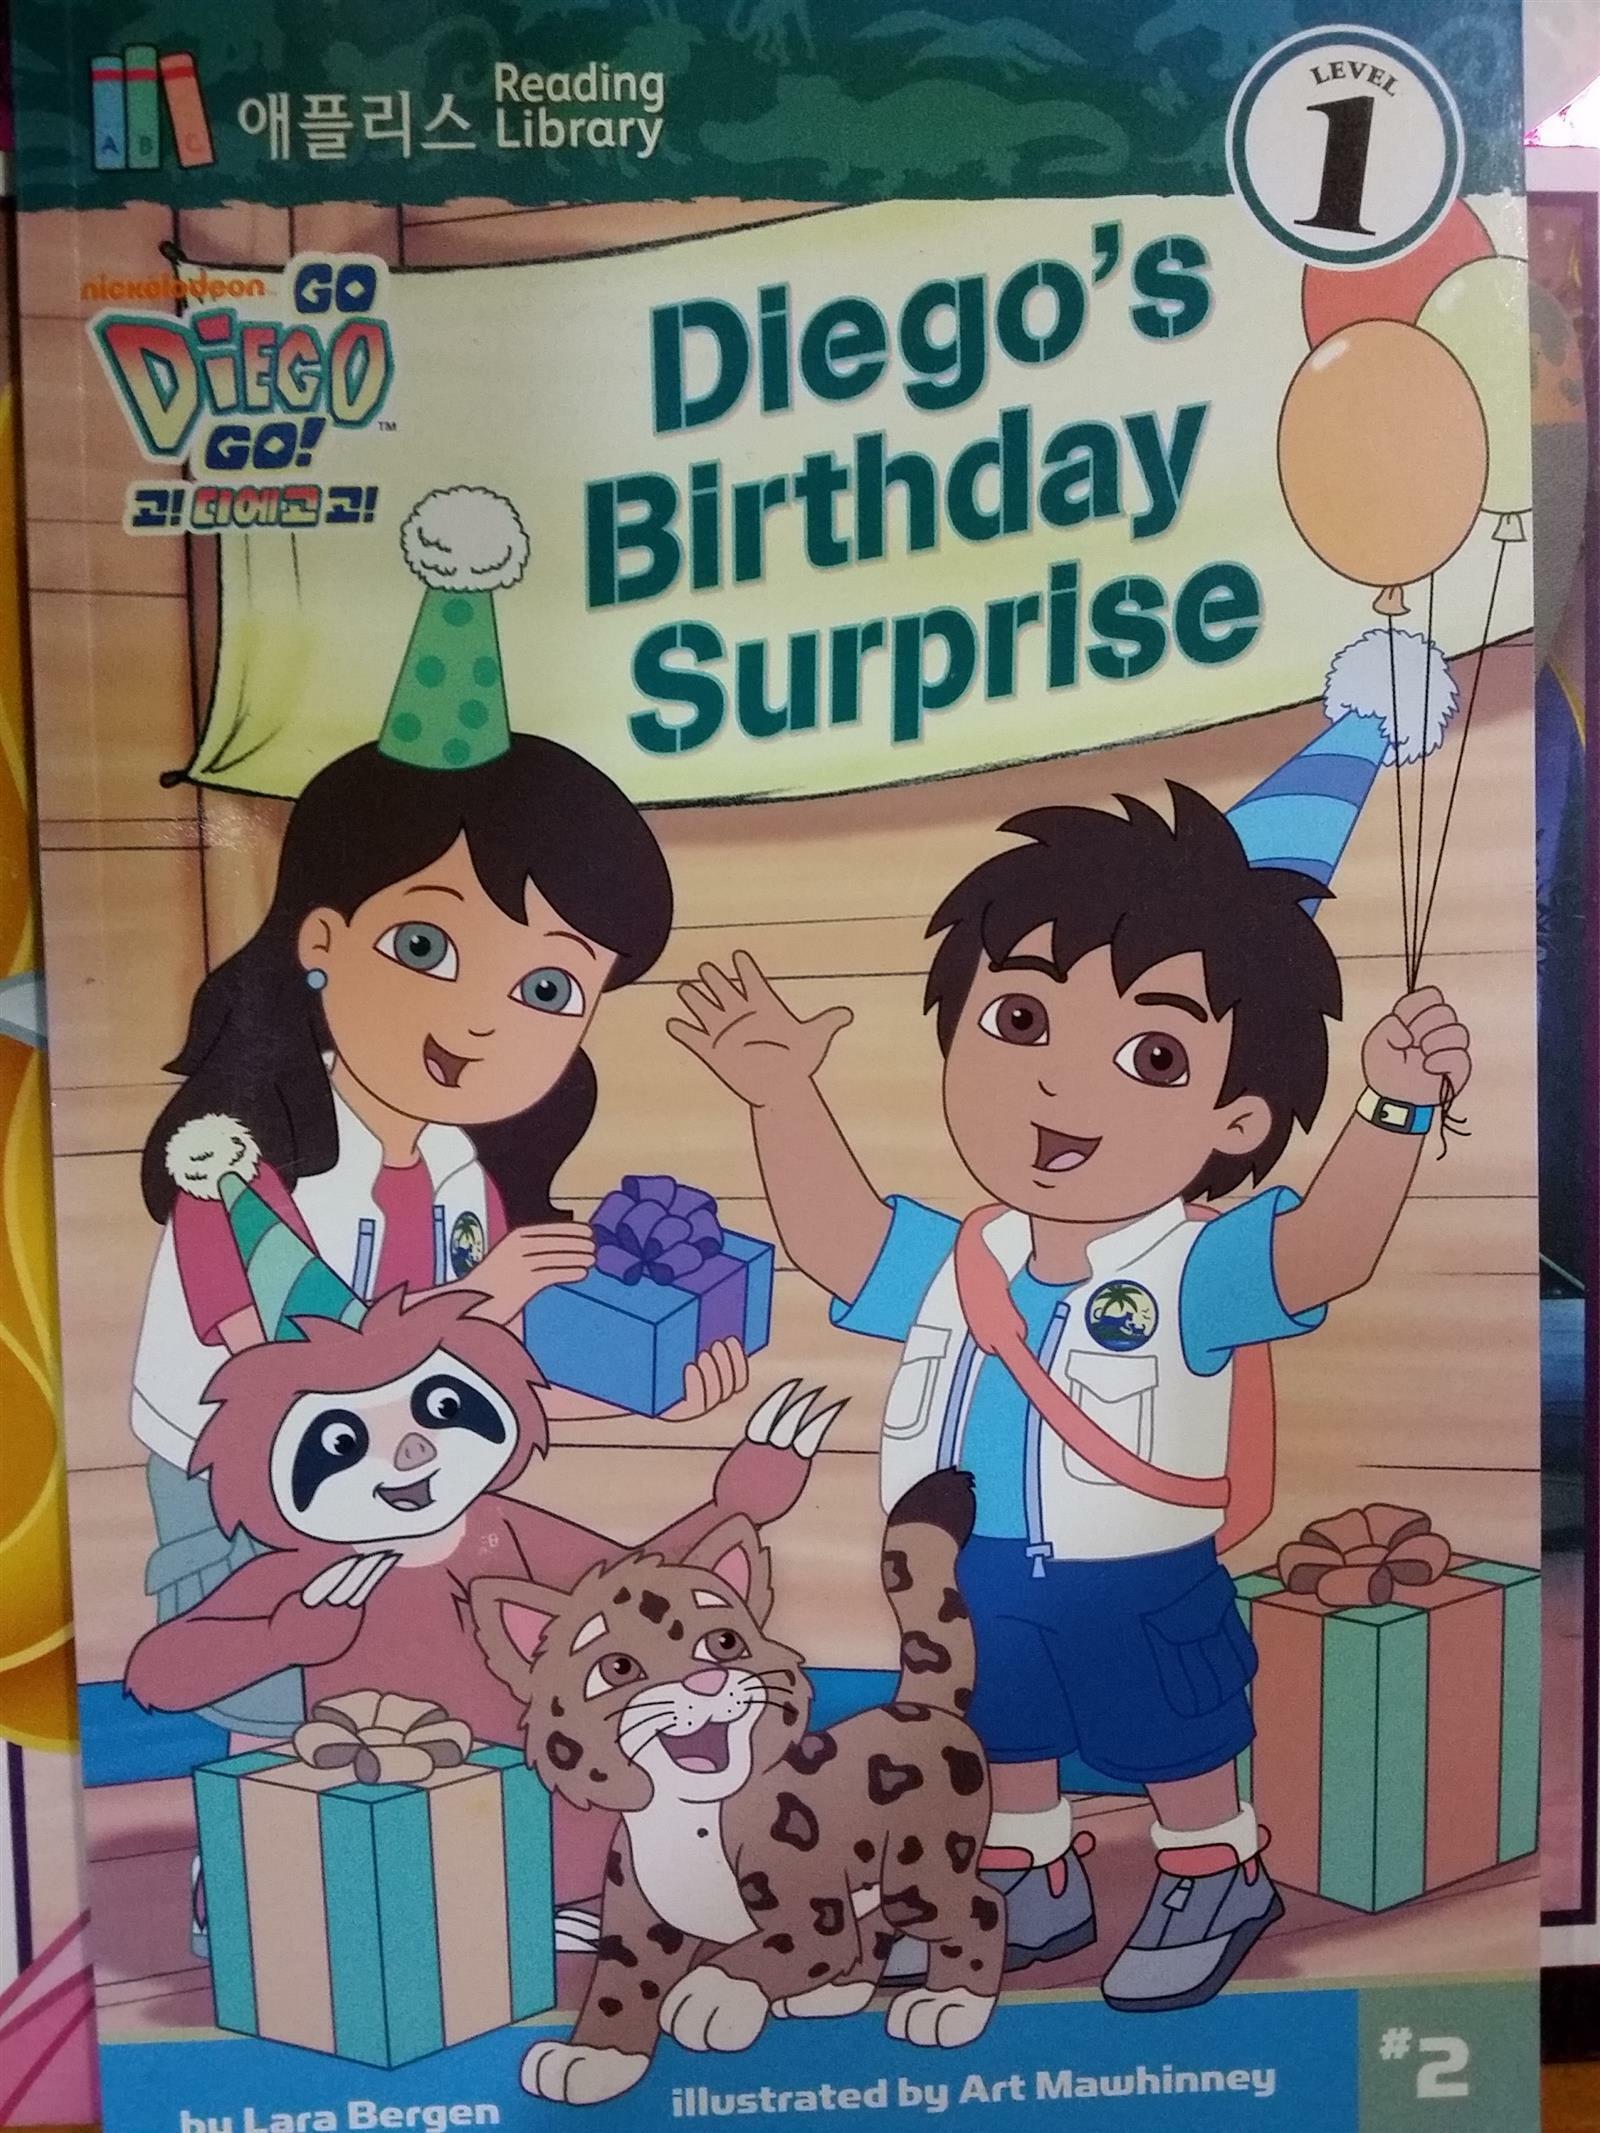 Diegos birthday surprise